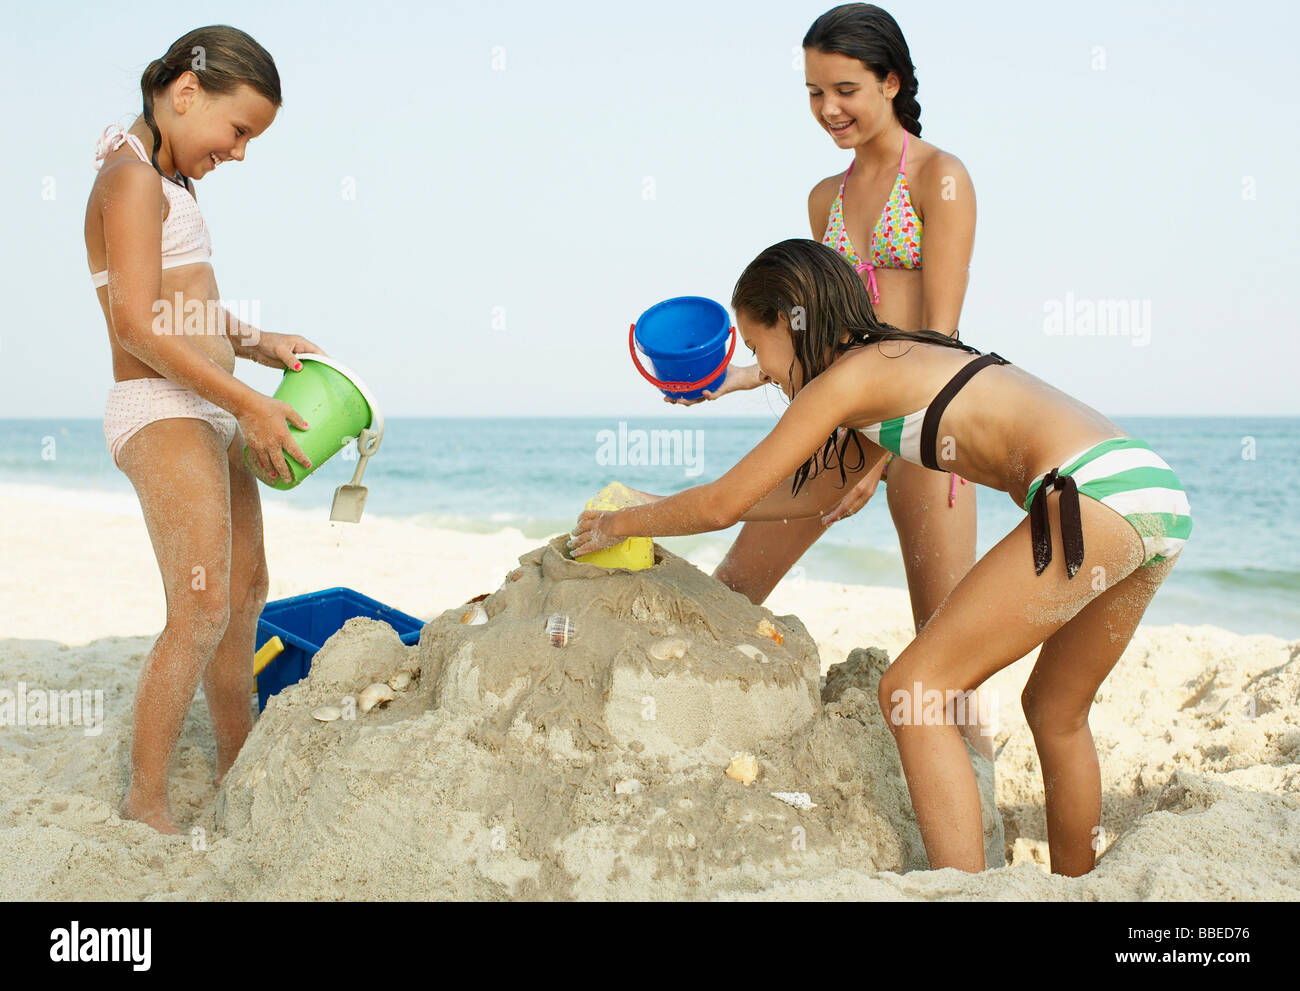 Nudist beach bent over girls